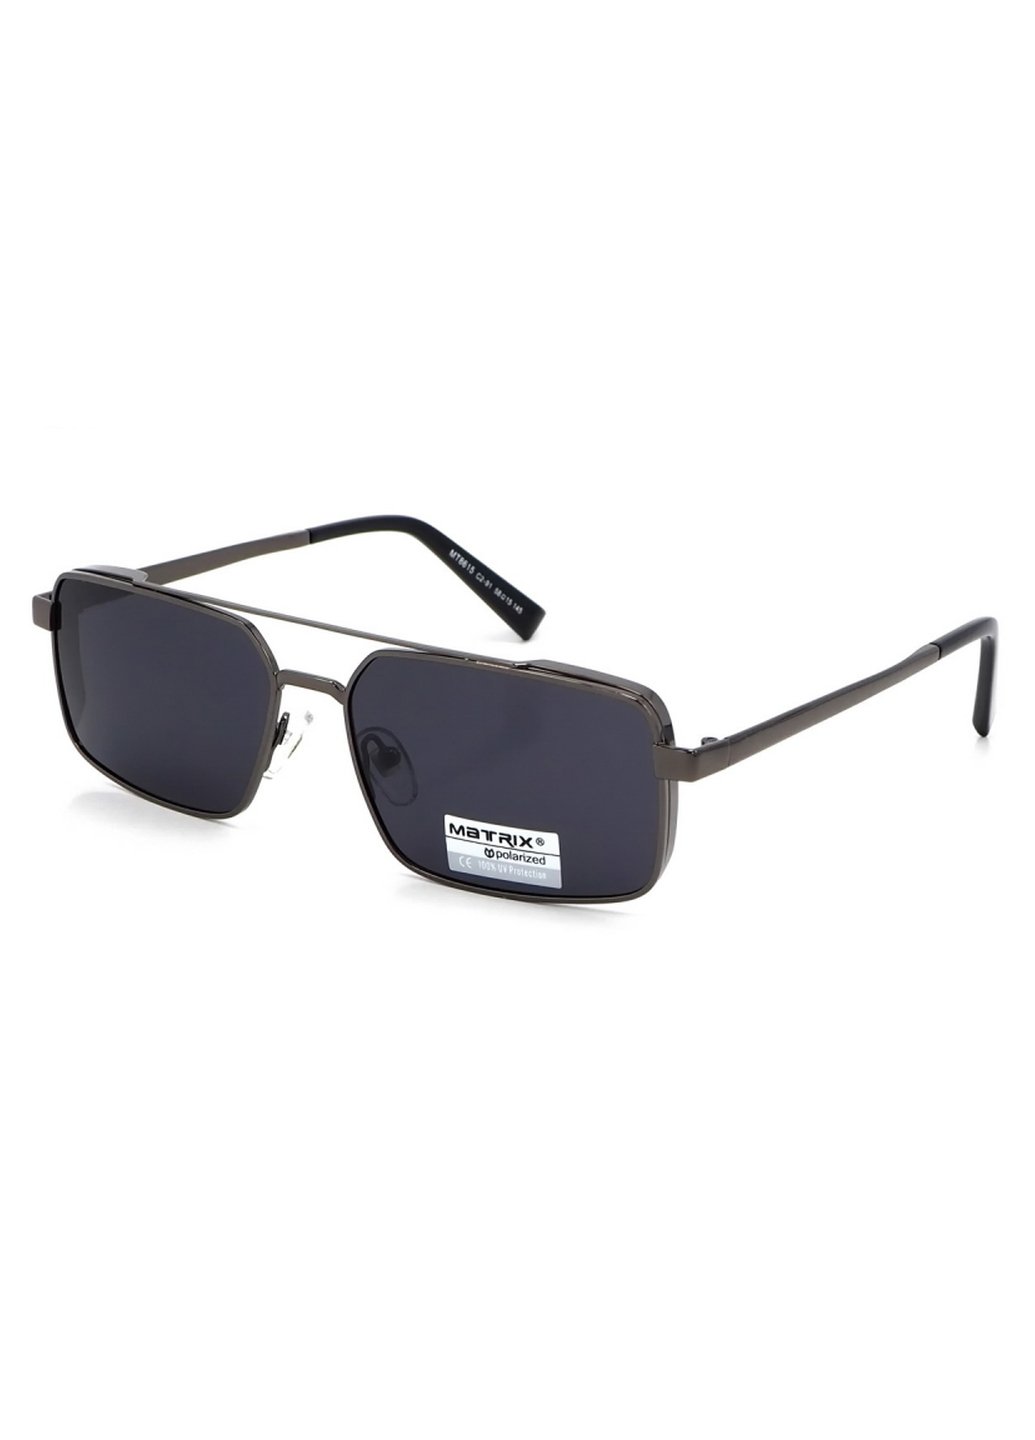 Купить Черные мужские солнцезащитные очки Matrix с поляризацией MT8615 111011 в интернет-магазине